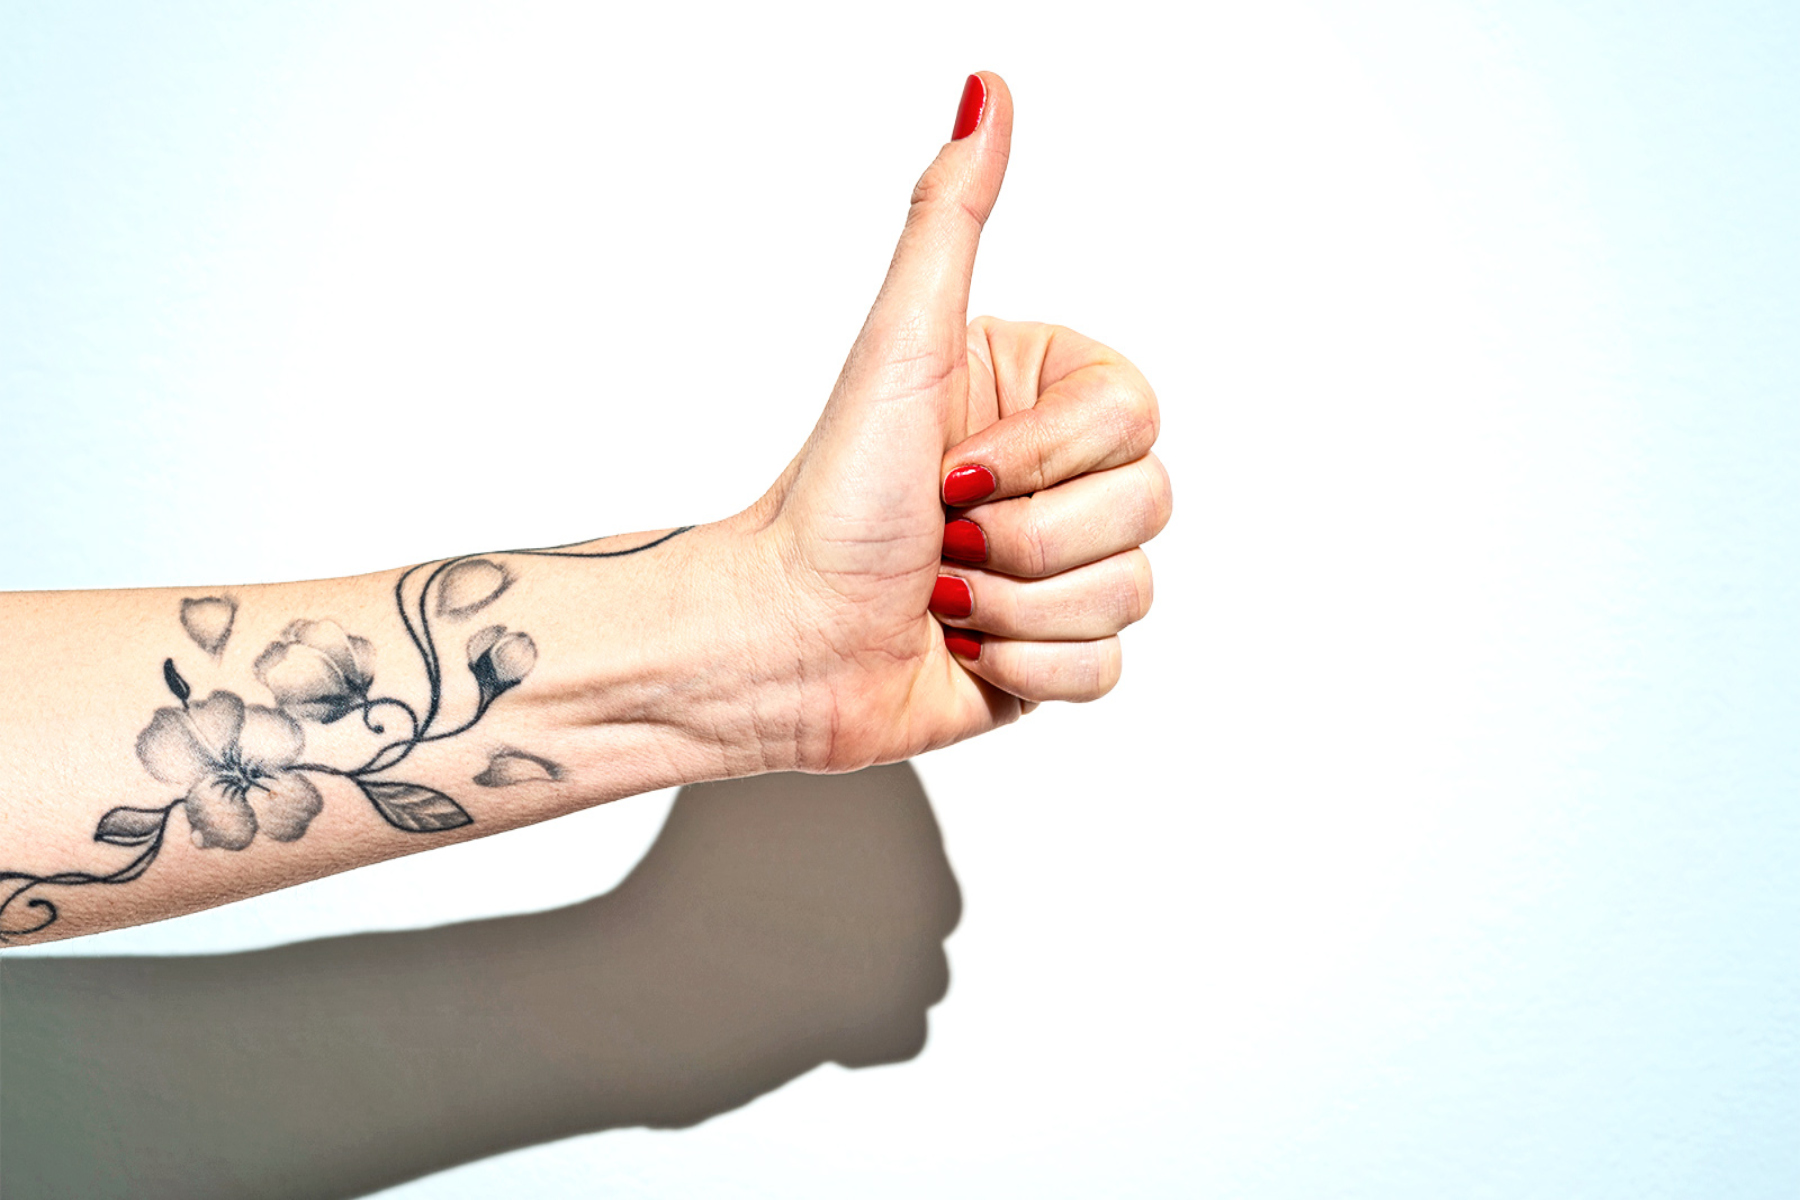 Ιατρικά τατουάζ: Το δικό σας τατουάζ μετρά το οξυγόνο σας;